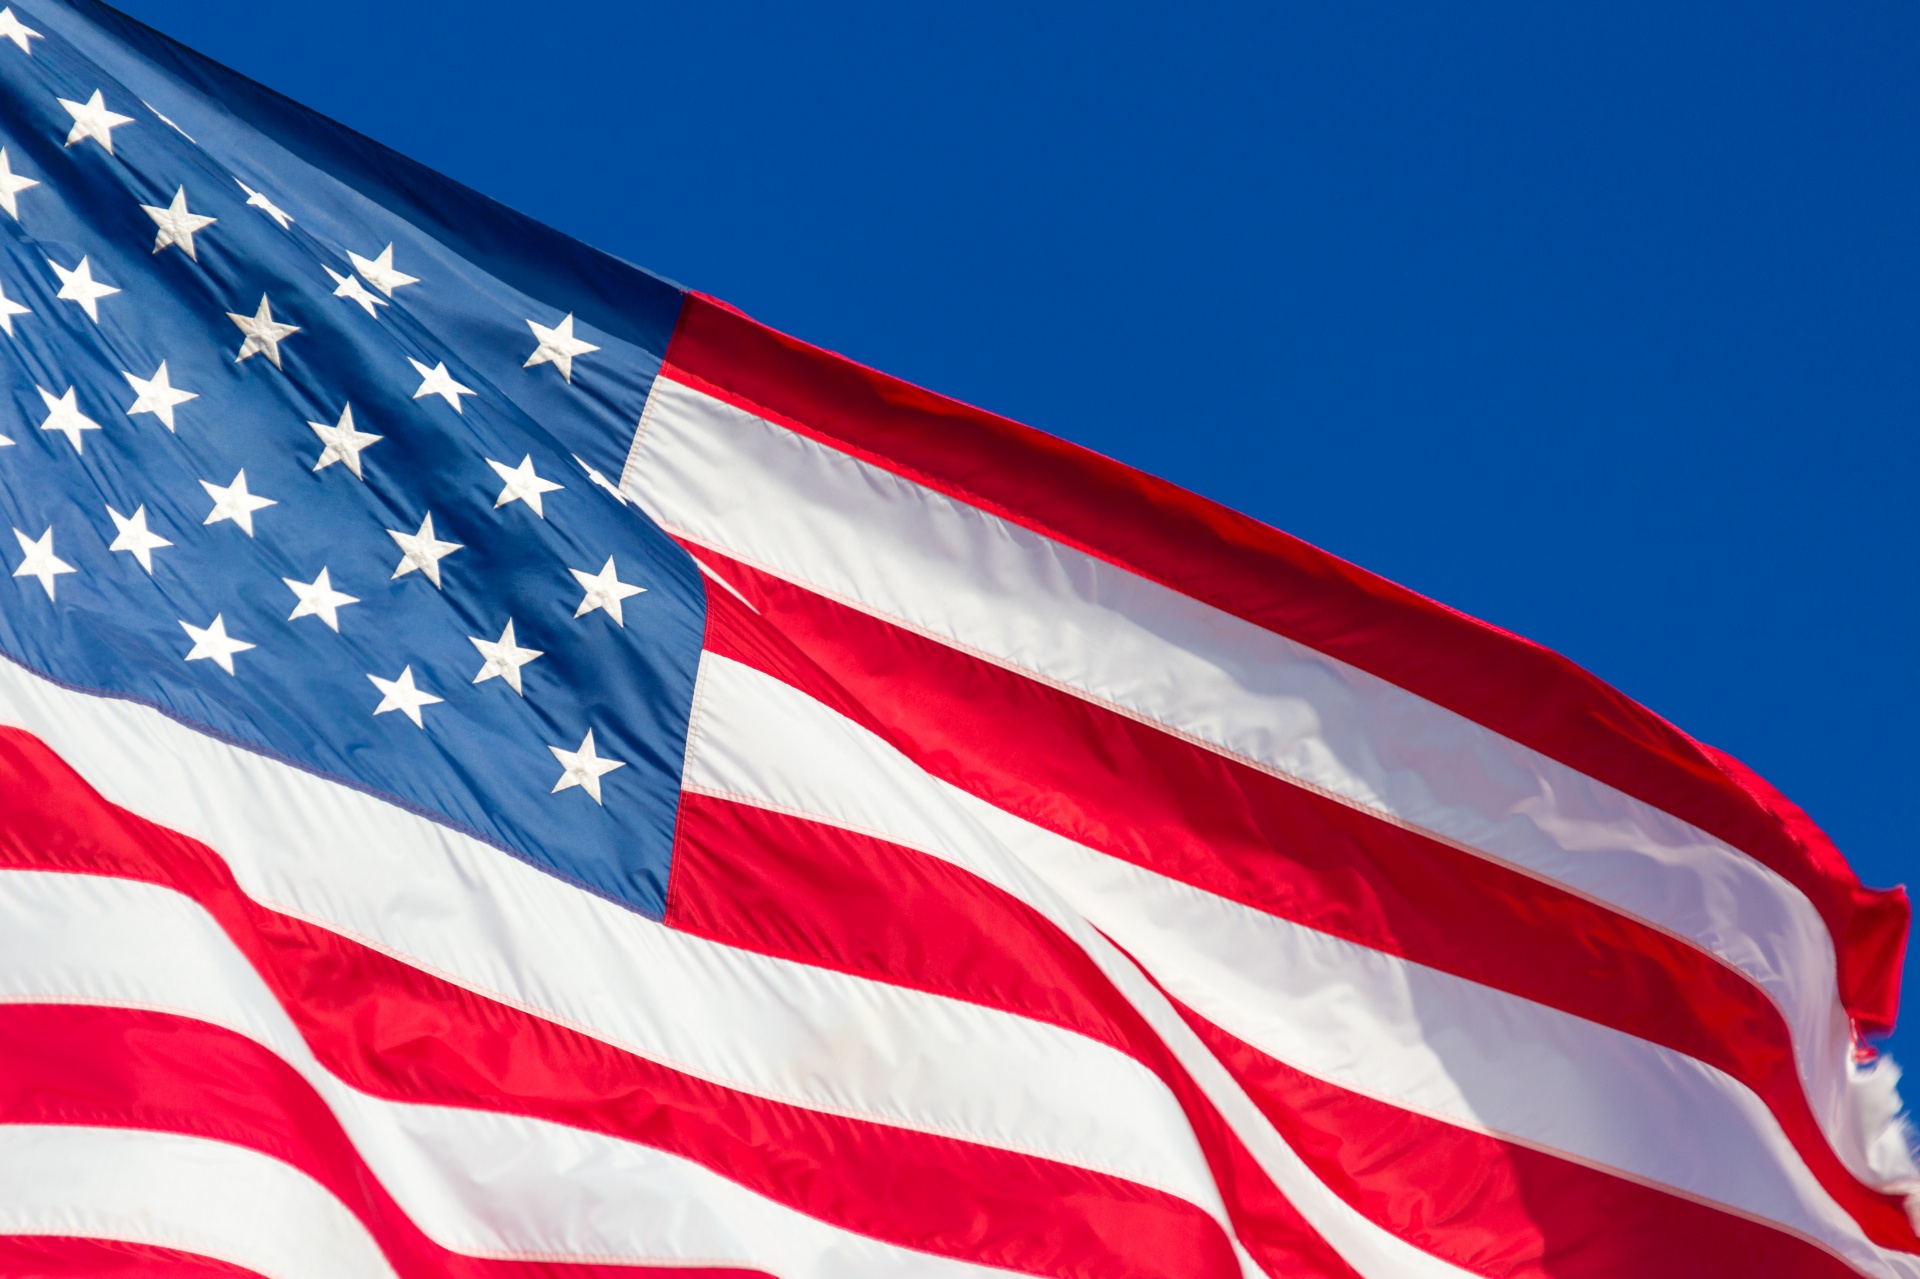 纪念日美国国旗 库存图片. 图片 包括有 自由, 爱国心, 外部, 爱国者, 街道, 城镇, 符号, 纪念 - 232405313